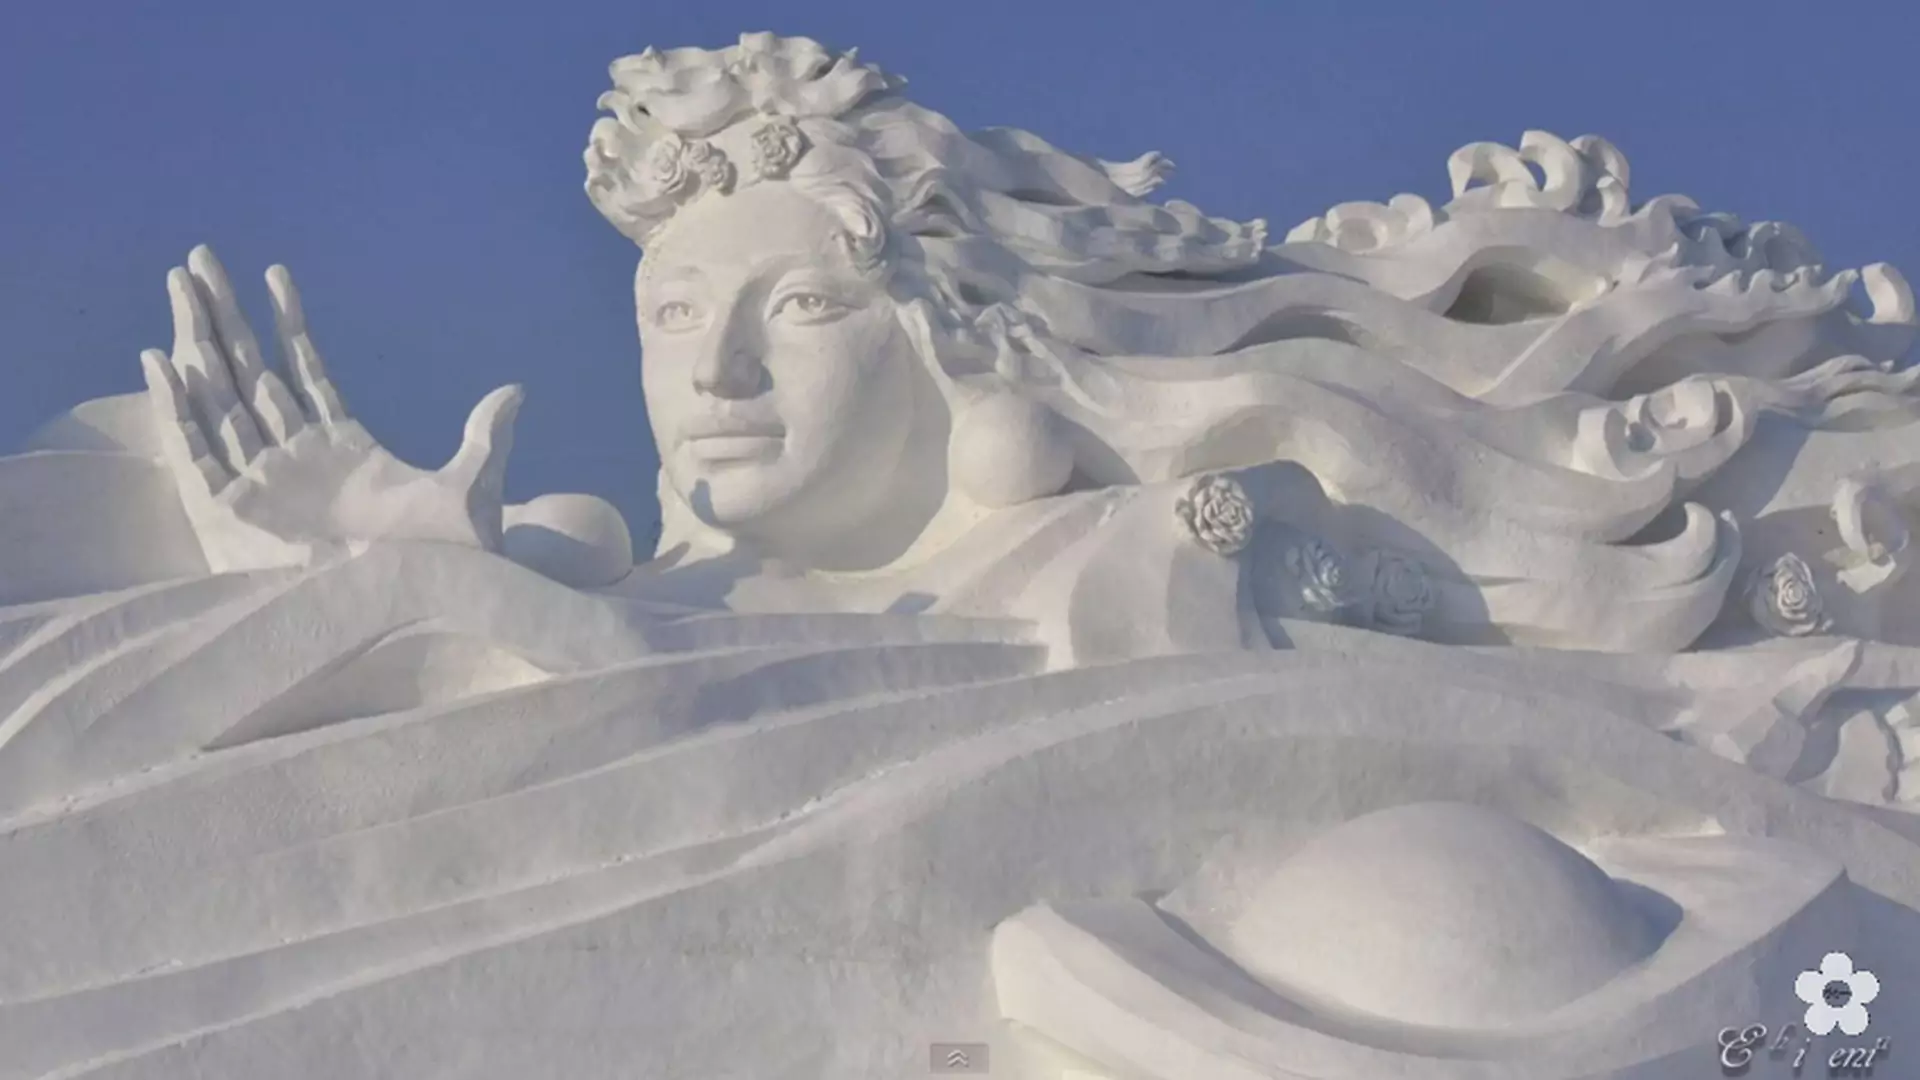 Rzeźby ze śniegu i lodu, które zapierają dech w piersiach